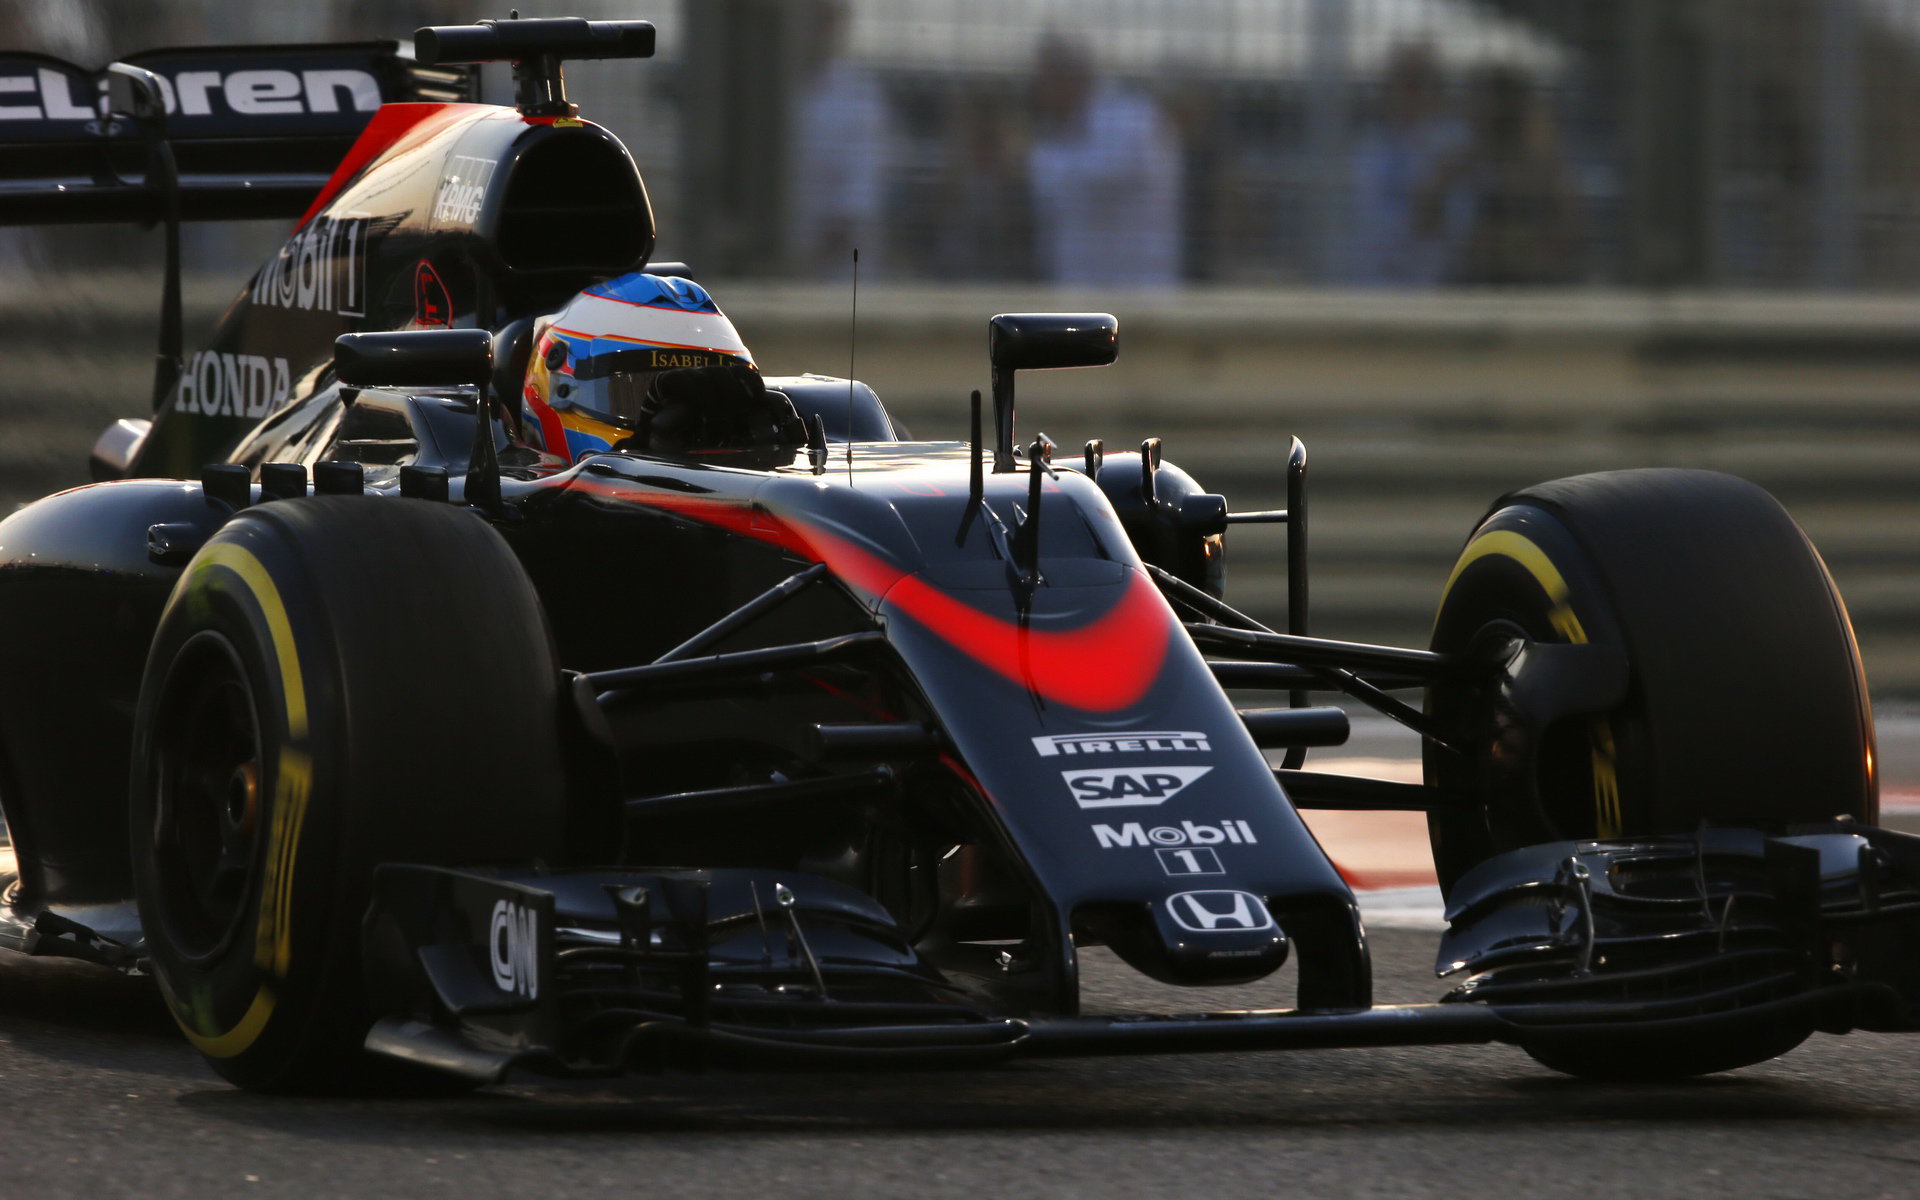 Tenhle rok se prostě nepovedl - Alonso i u McLarenu pohoršil